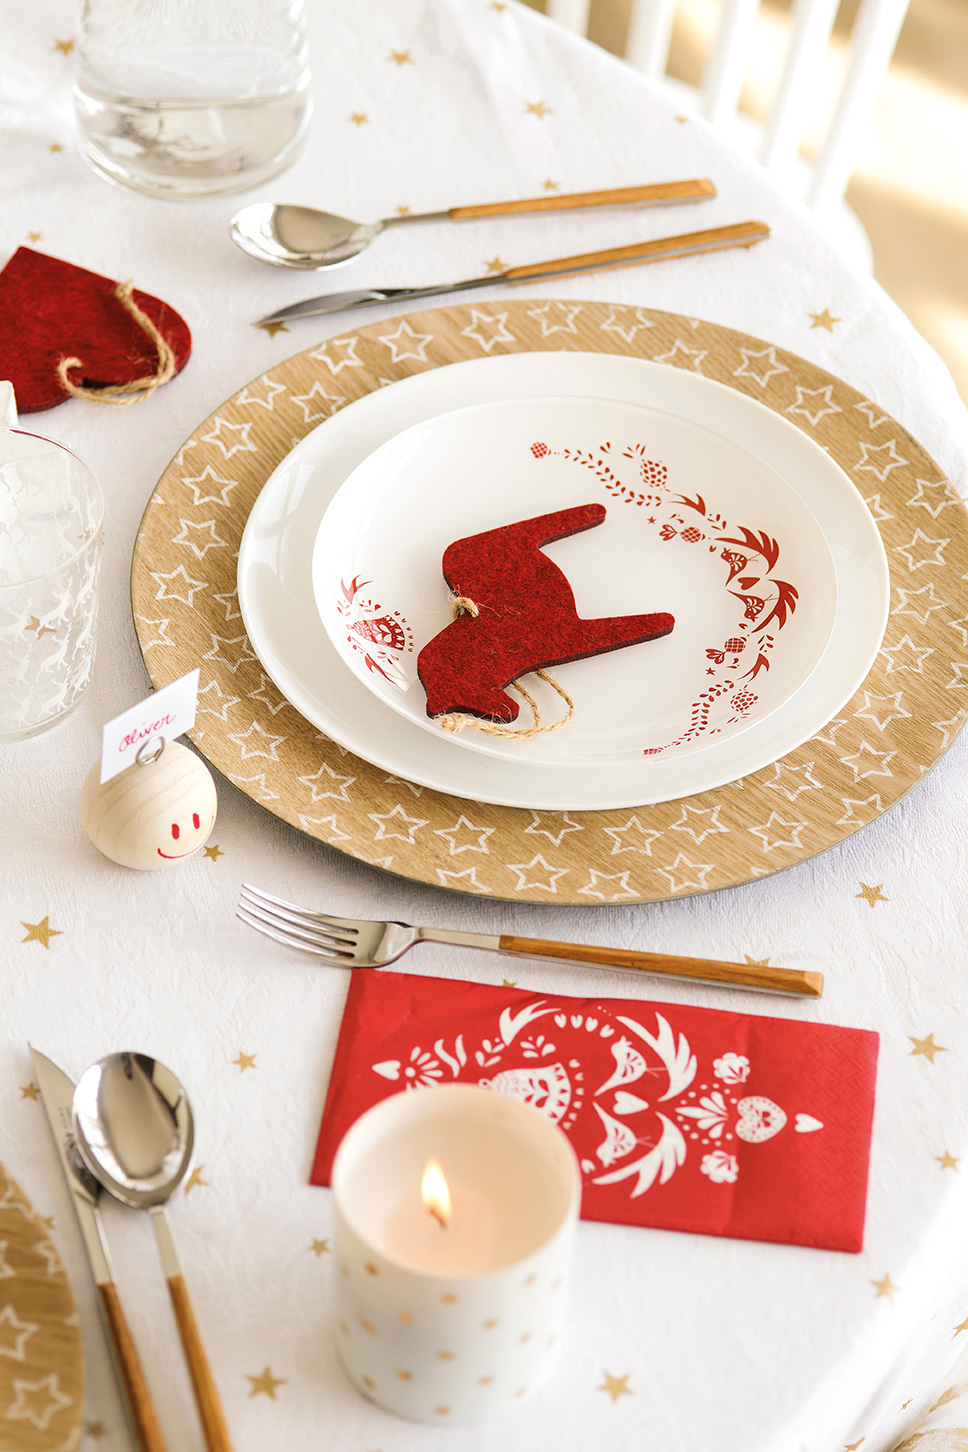 00444898. Detalle de la vajilla y decoración navideña de la mesa en rojo, dorado y blanco_00444898